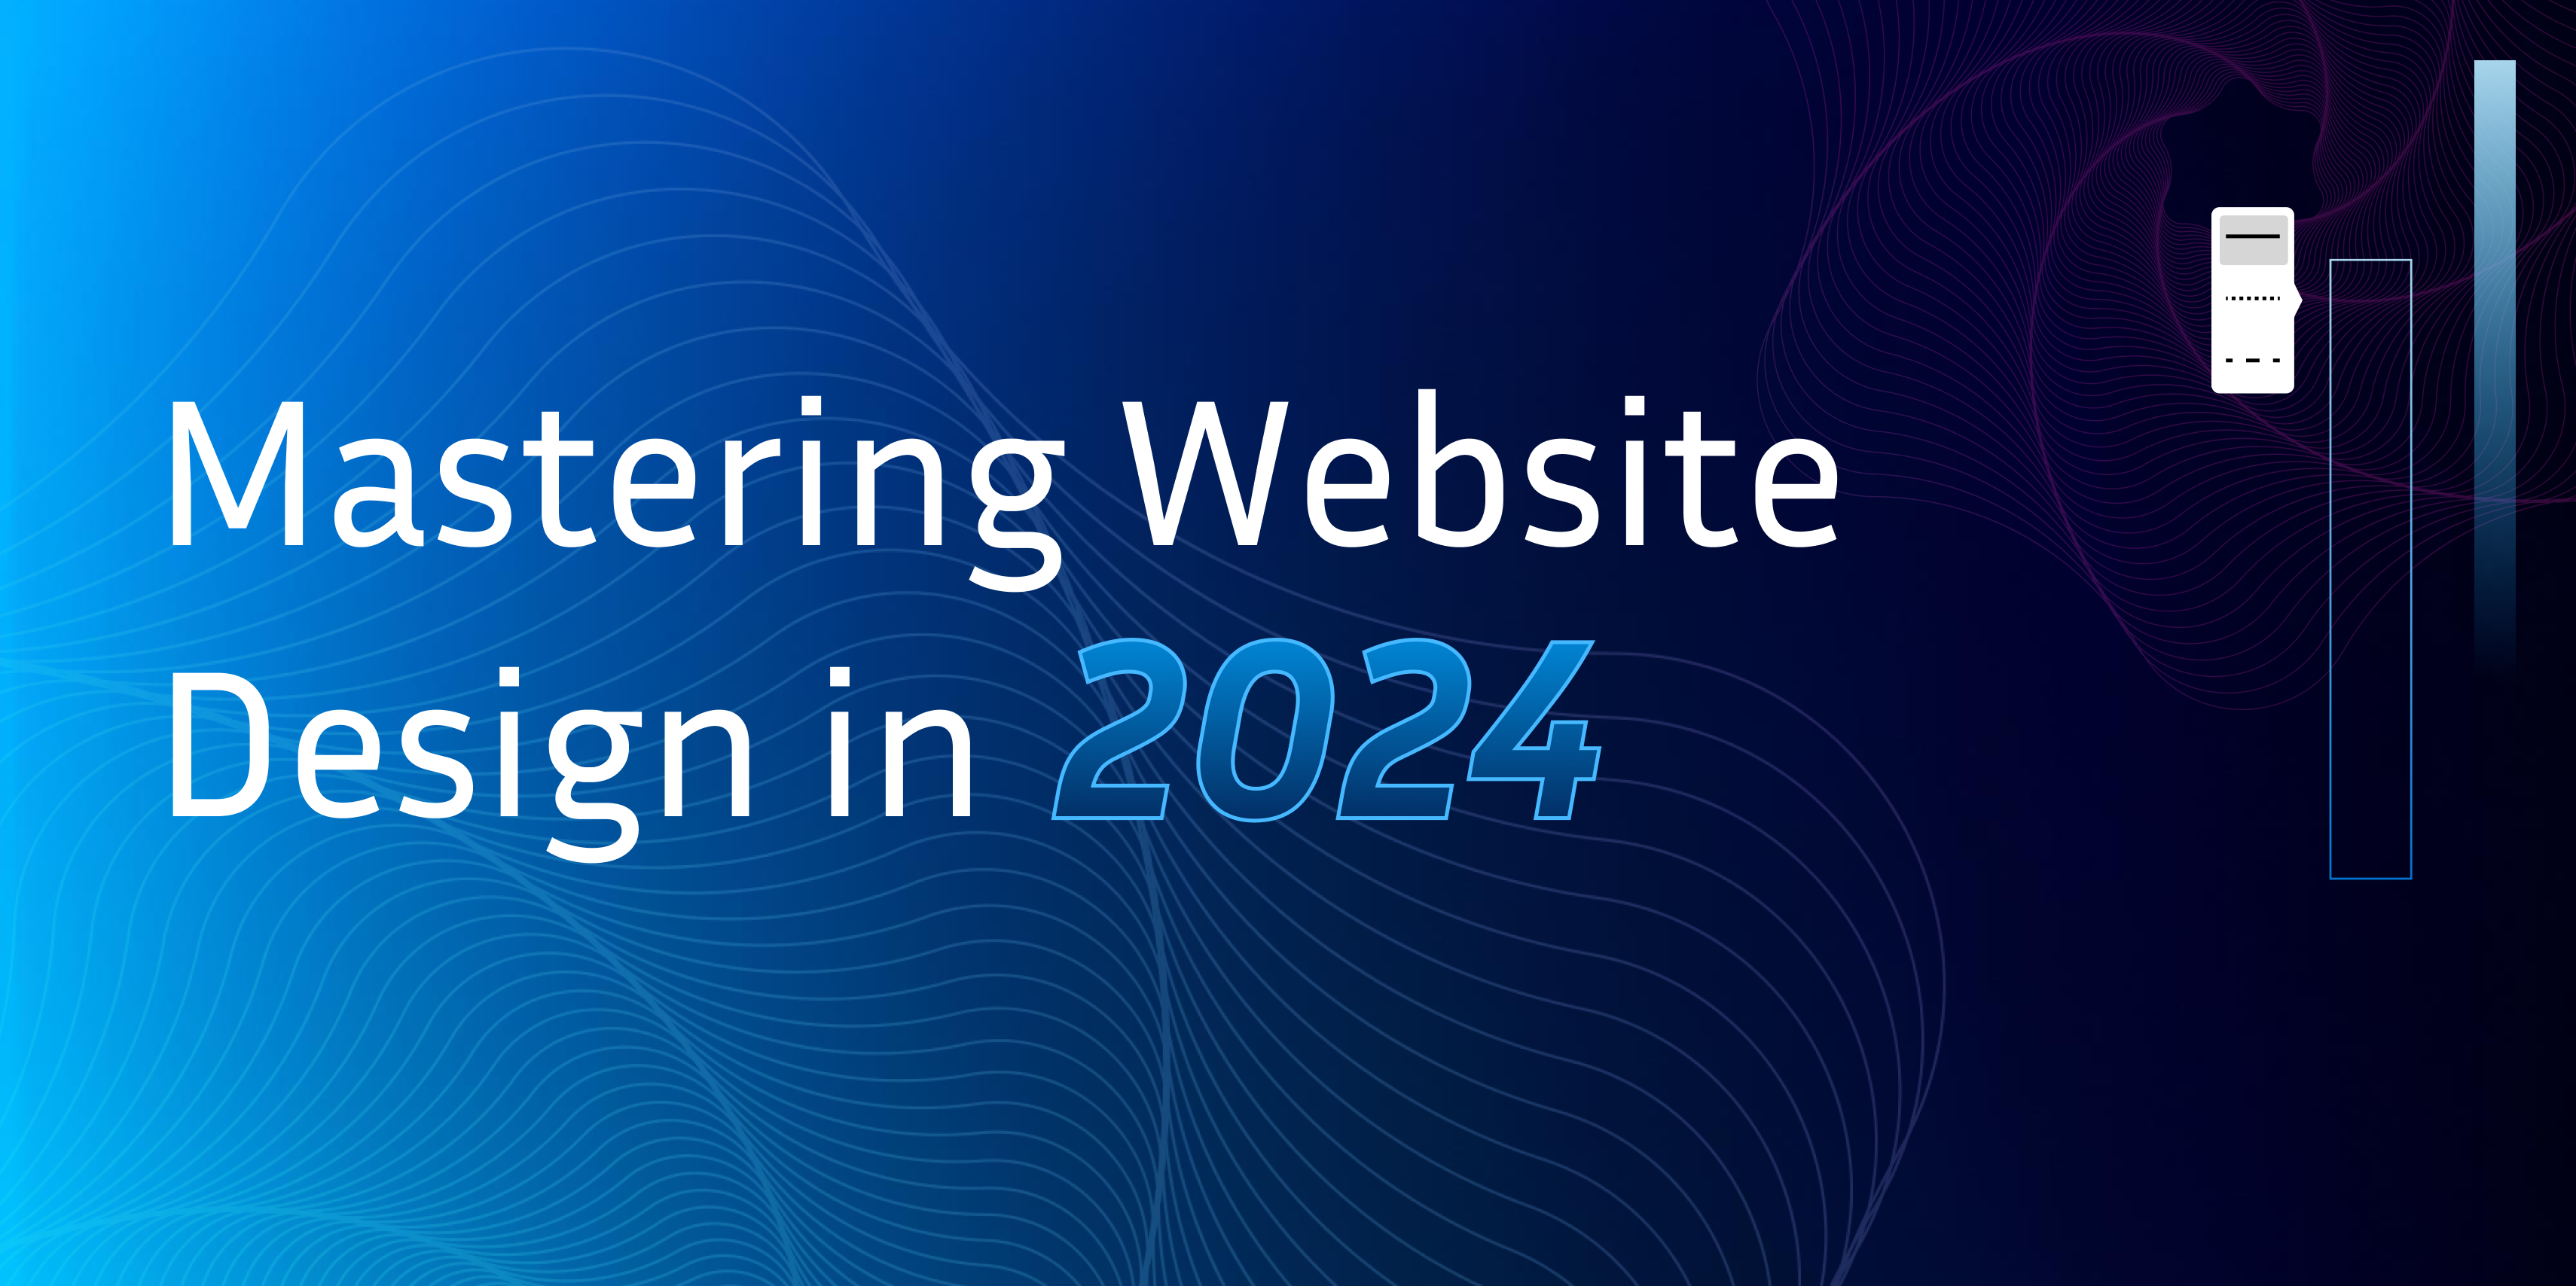 Mastering Website Design in 2024